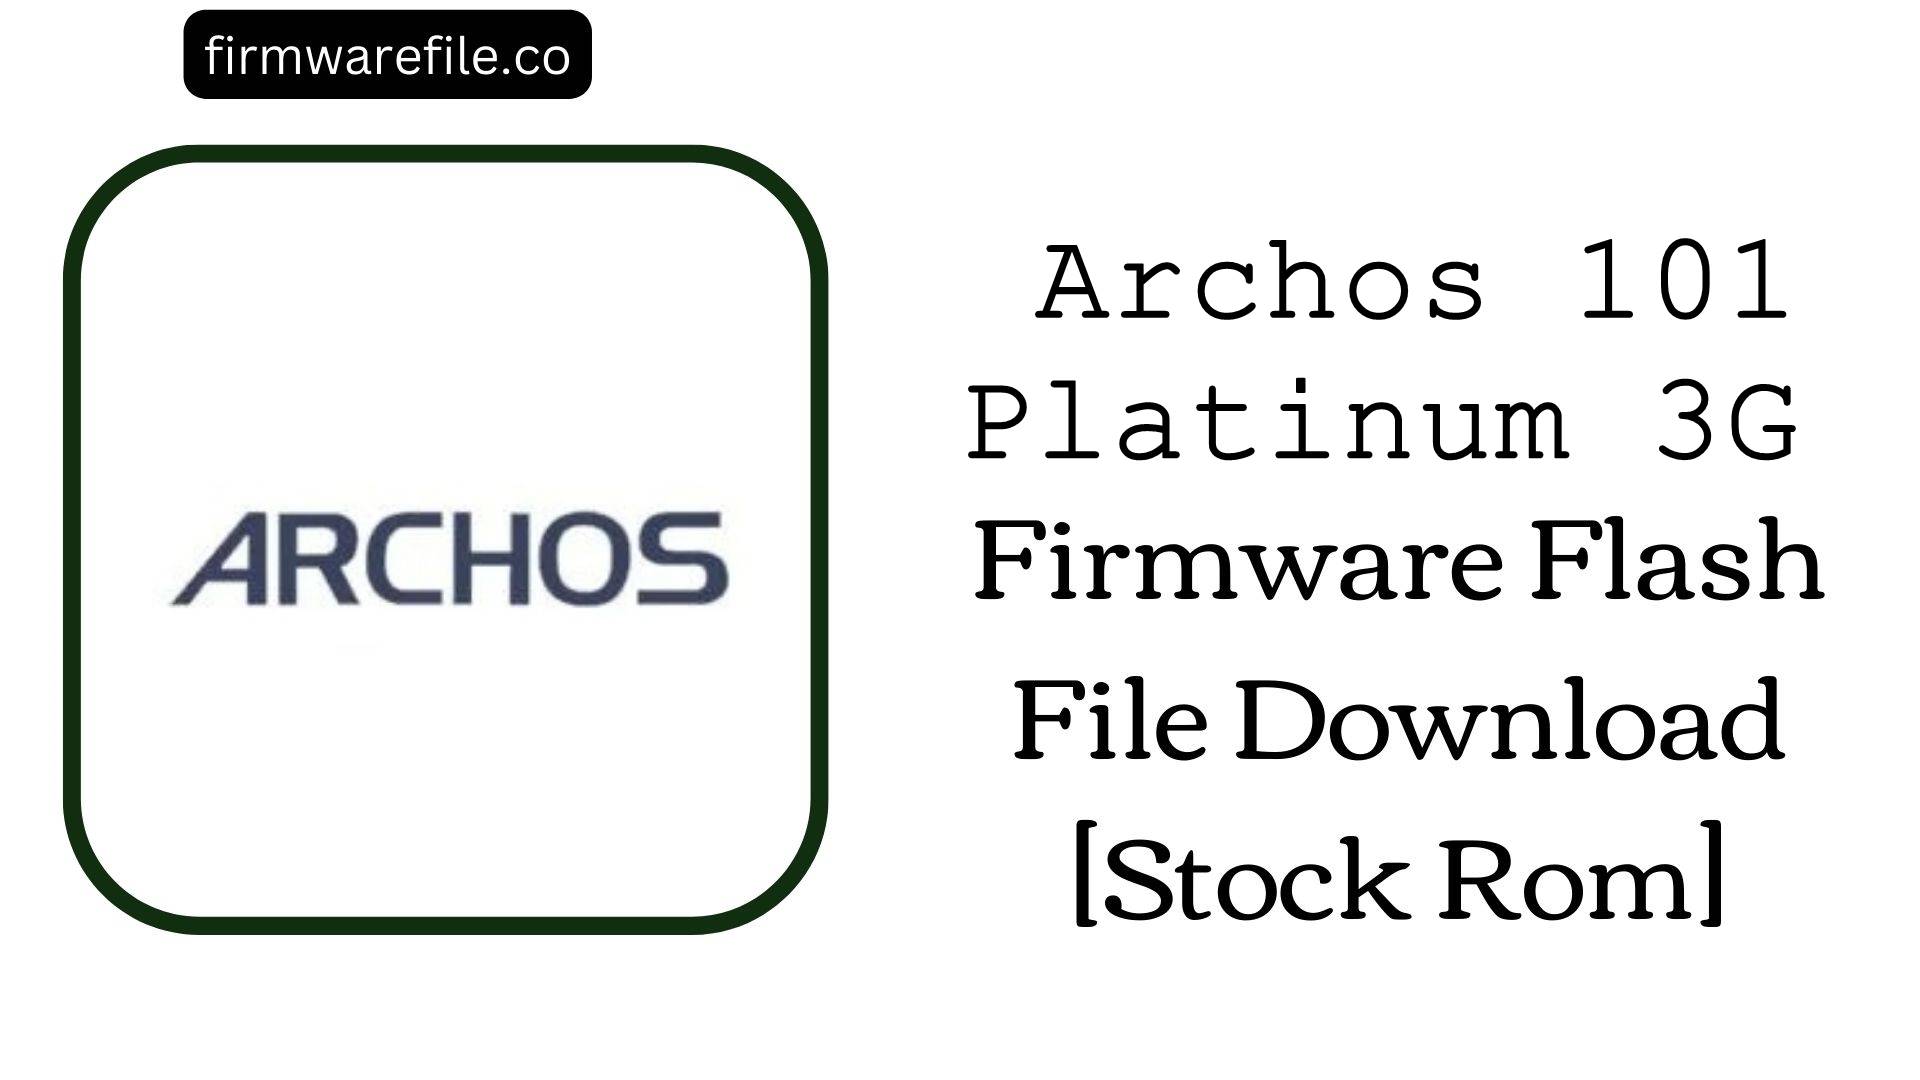 Archos 101 Platinum 3G